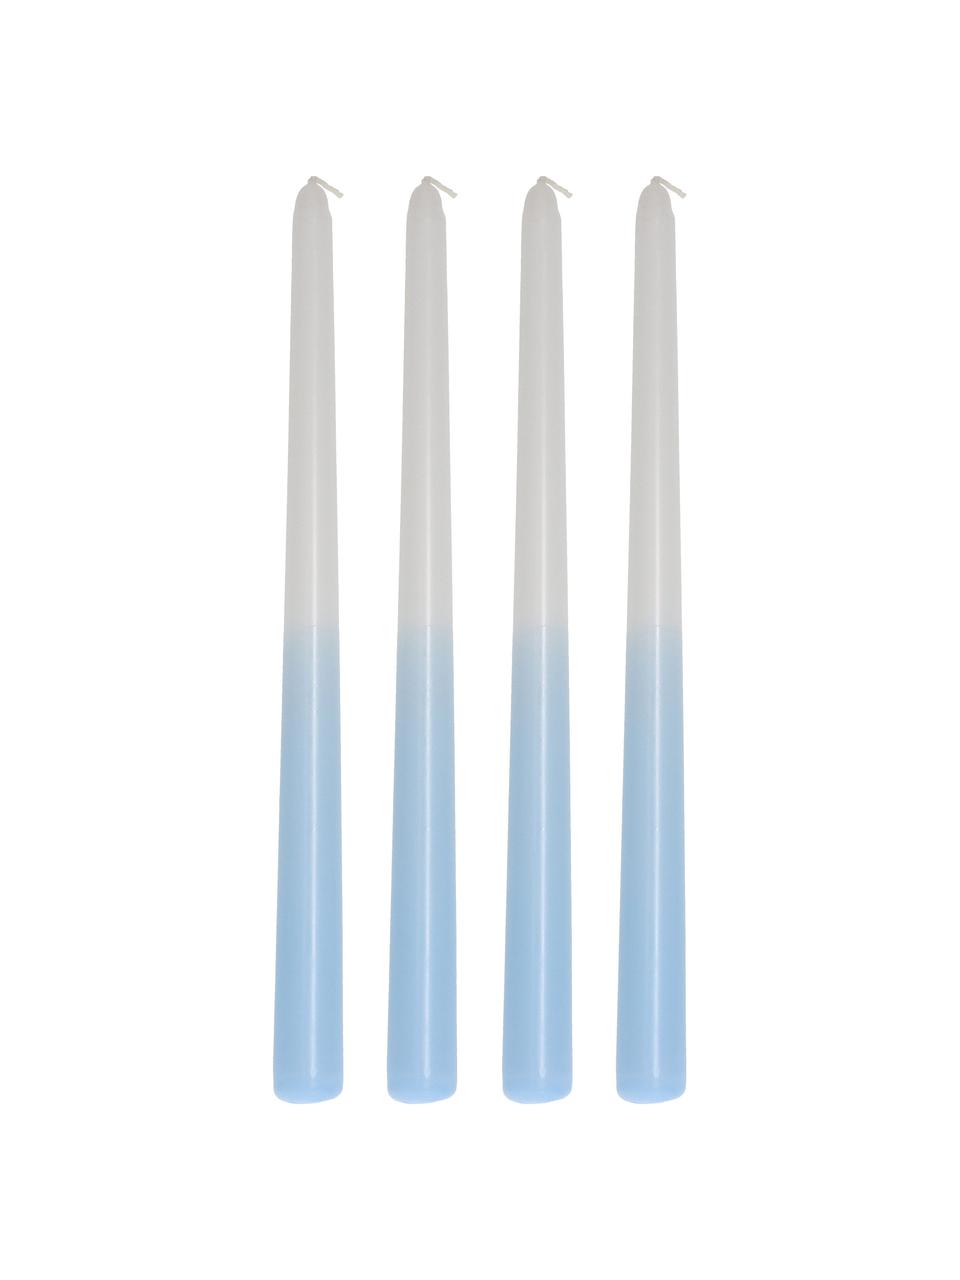 Stolní svíce Dubli, 4 ks, Vosk, Modrá, bílá, Ø 2 cm, V 31 cm